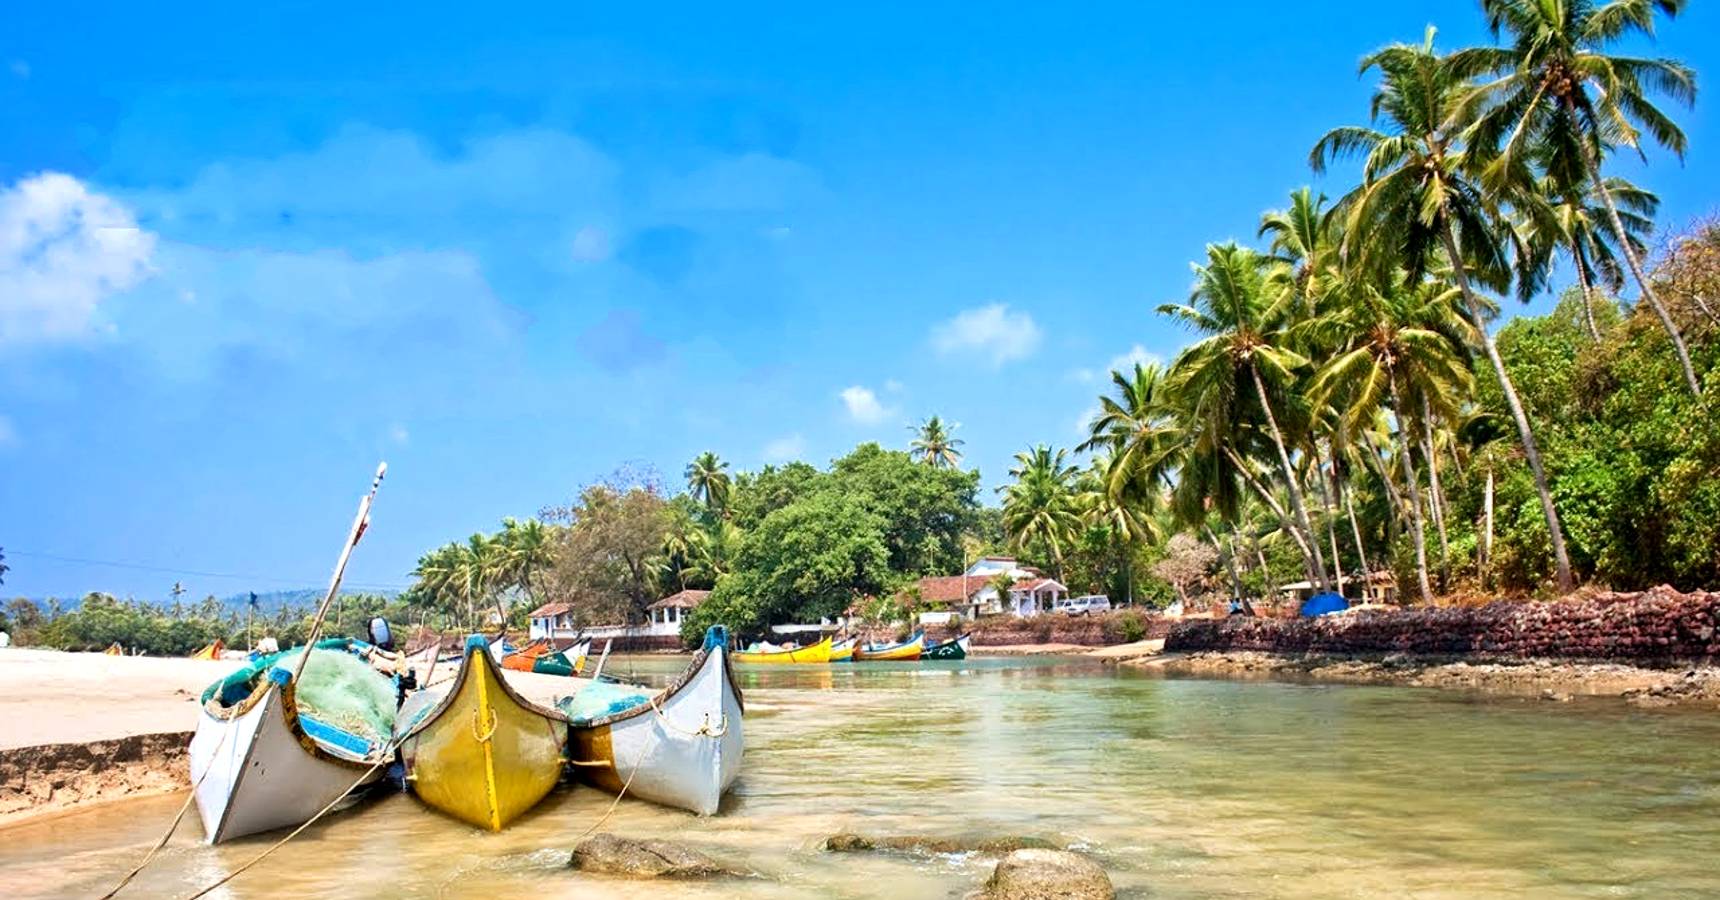 Tarkarli sea beach, Maharashtra travel destination